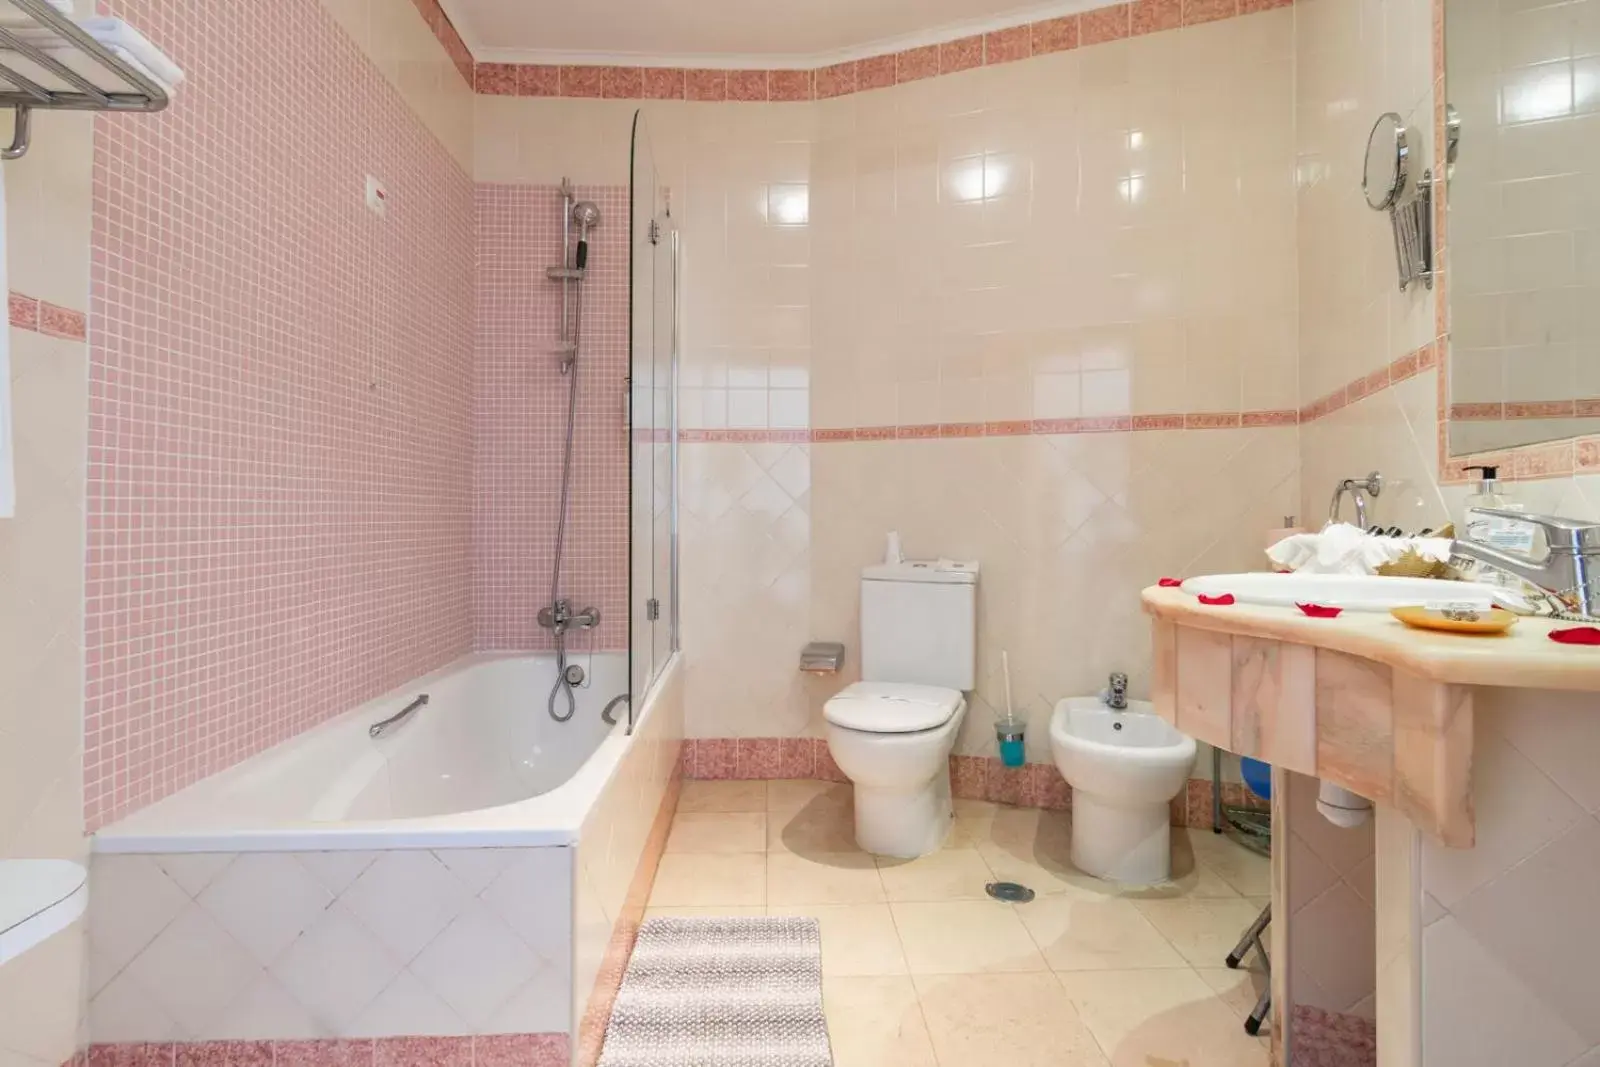 Bathroom in Hotel Dom Vasco